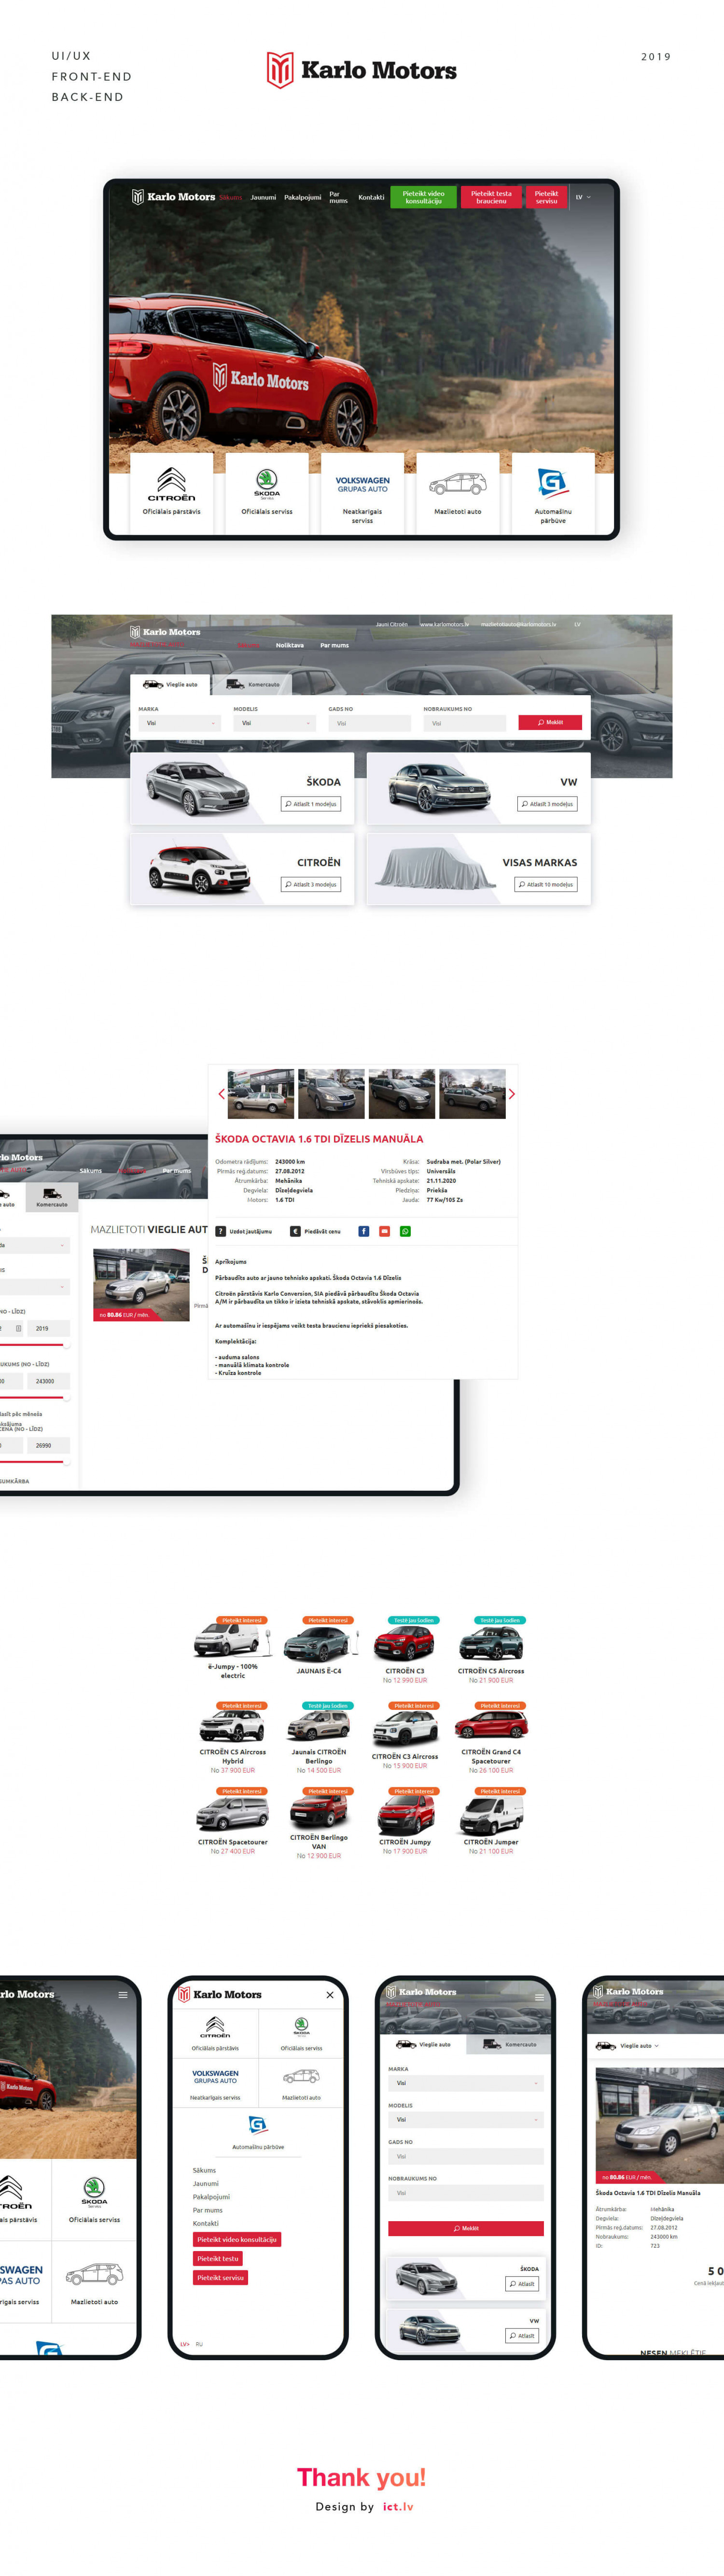 Karlo Motors website development